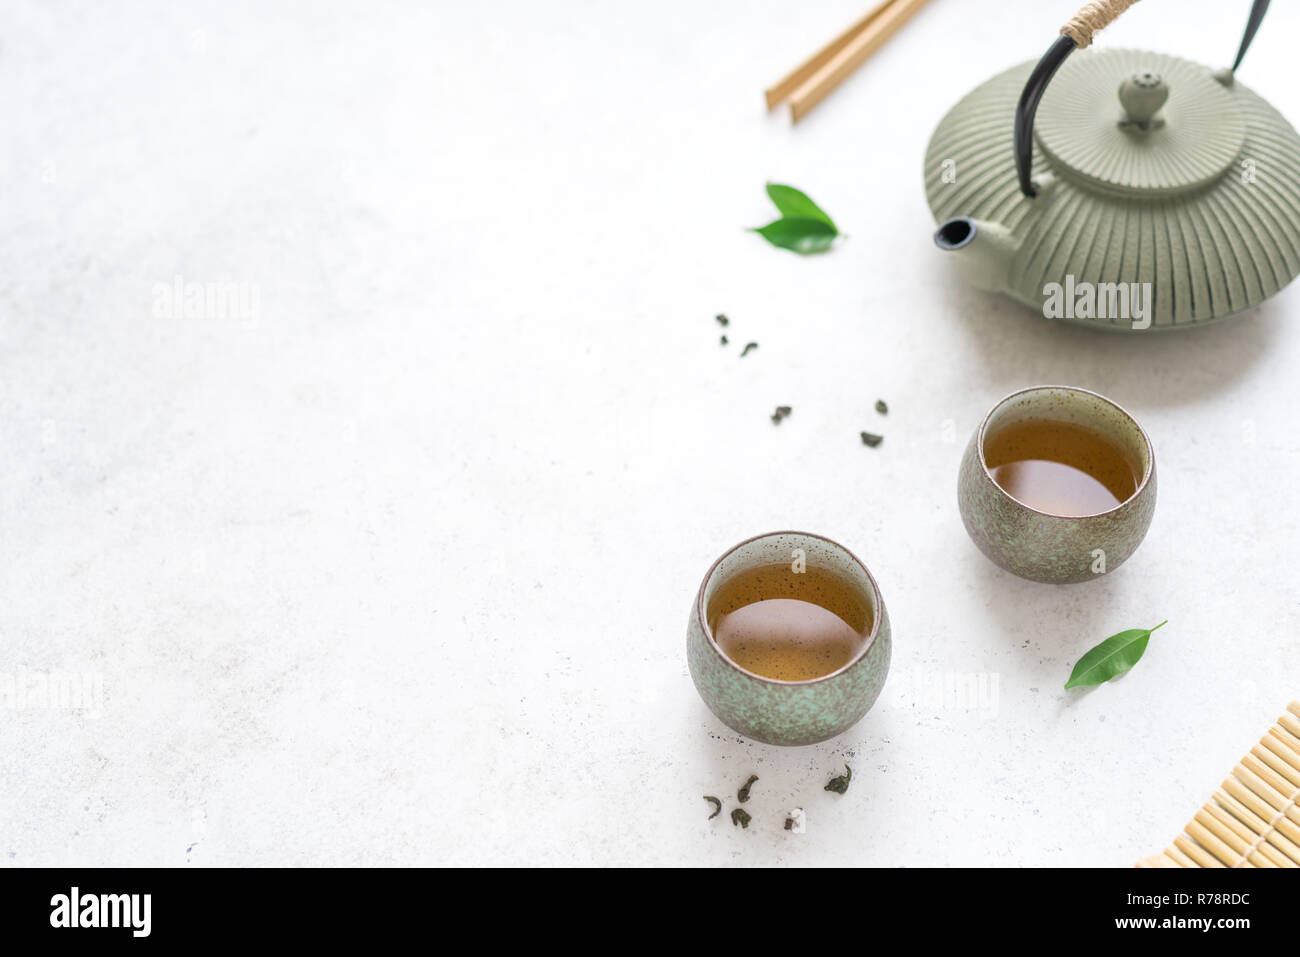 Service à thé chinois - théière en céramique et les tasses de thé vert et de feuilles. La composition traditionnelle du thé sur fond blanc, copie de l'espace. Banque D'Images